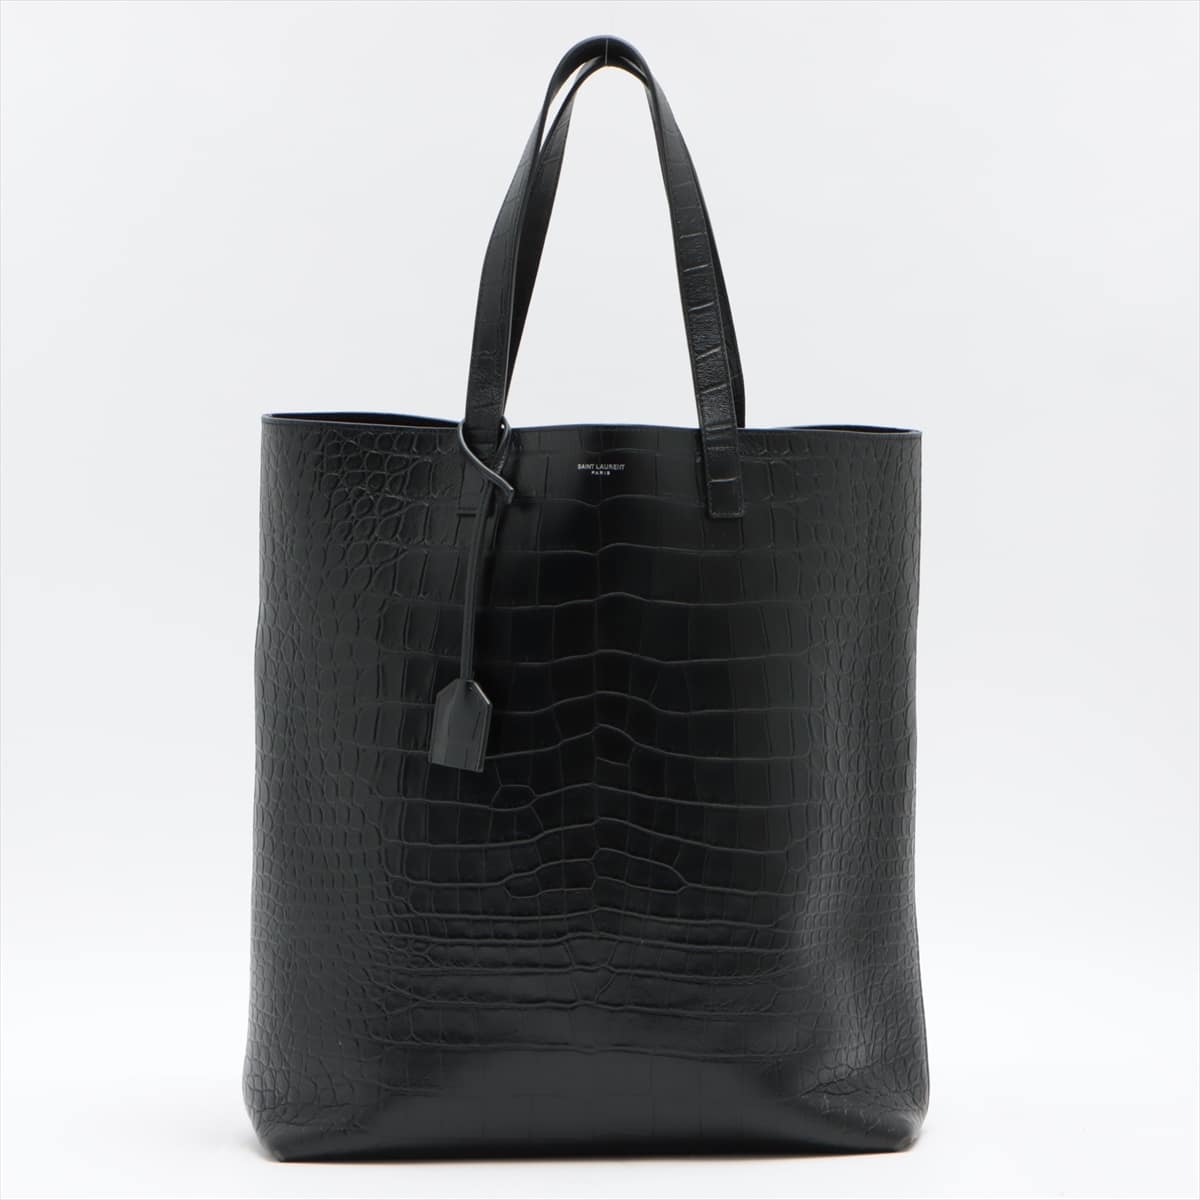 Saint Laurent Paris Sac Shopping Moc croc Tote bag Black 591747 with pouch